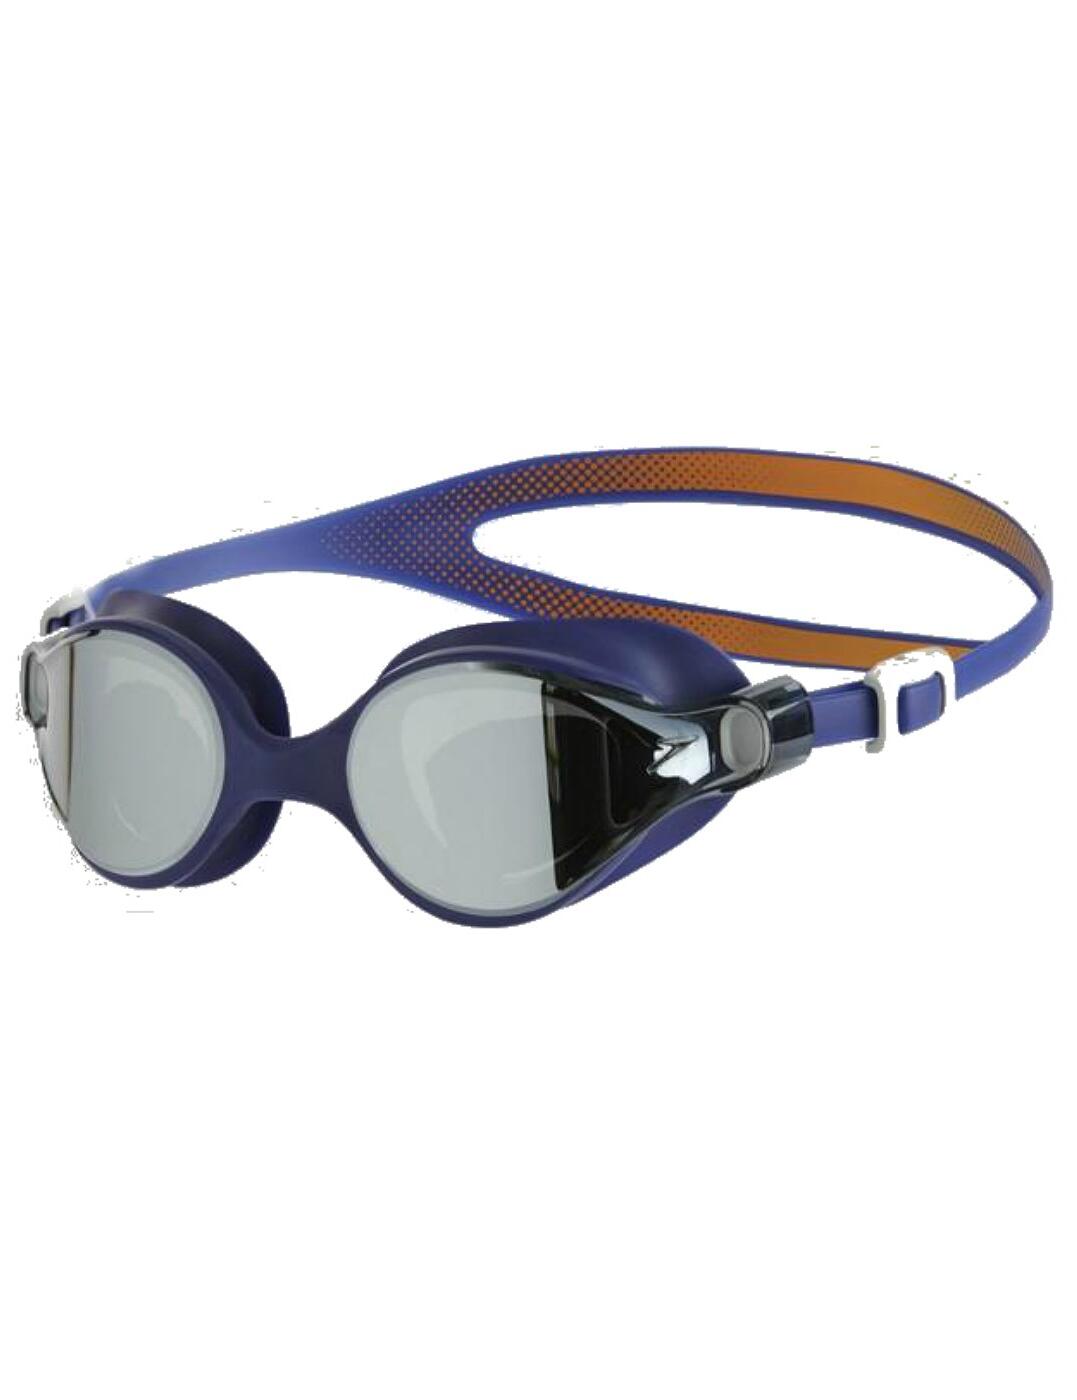 Speedo V-Class Virtue Goggles - Lingerie | Speedo Virtue Mirror Goggles - Belle Lingerie